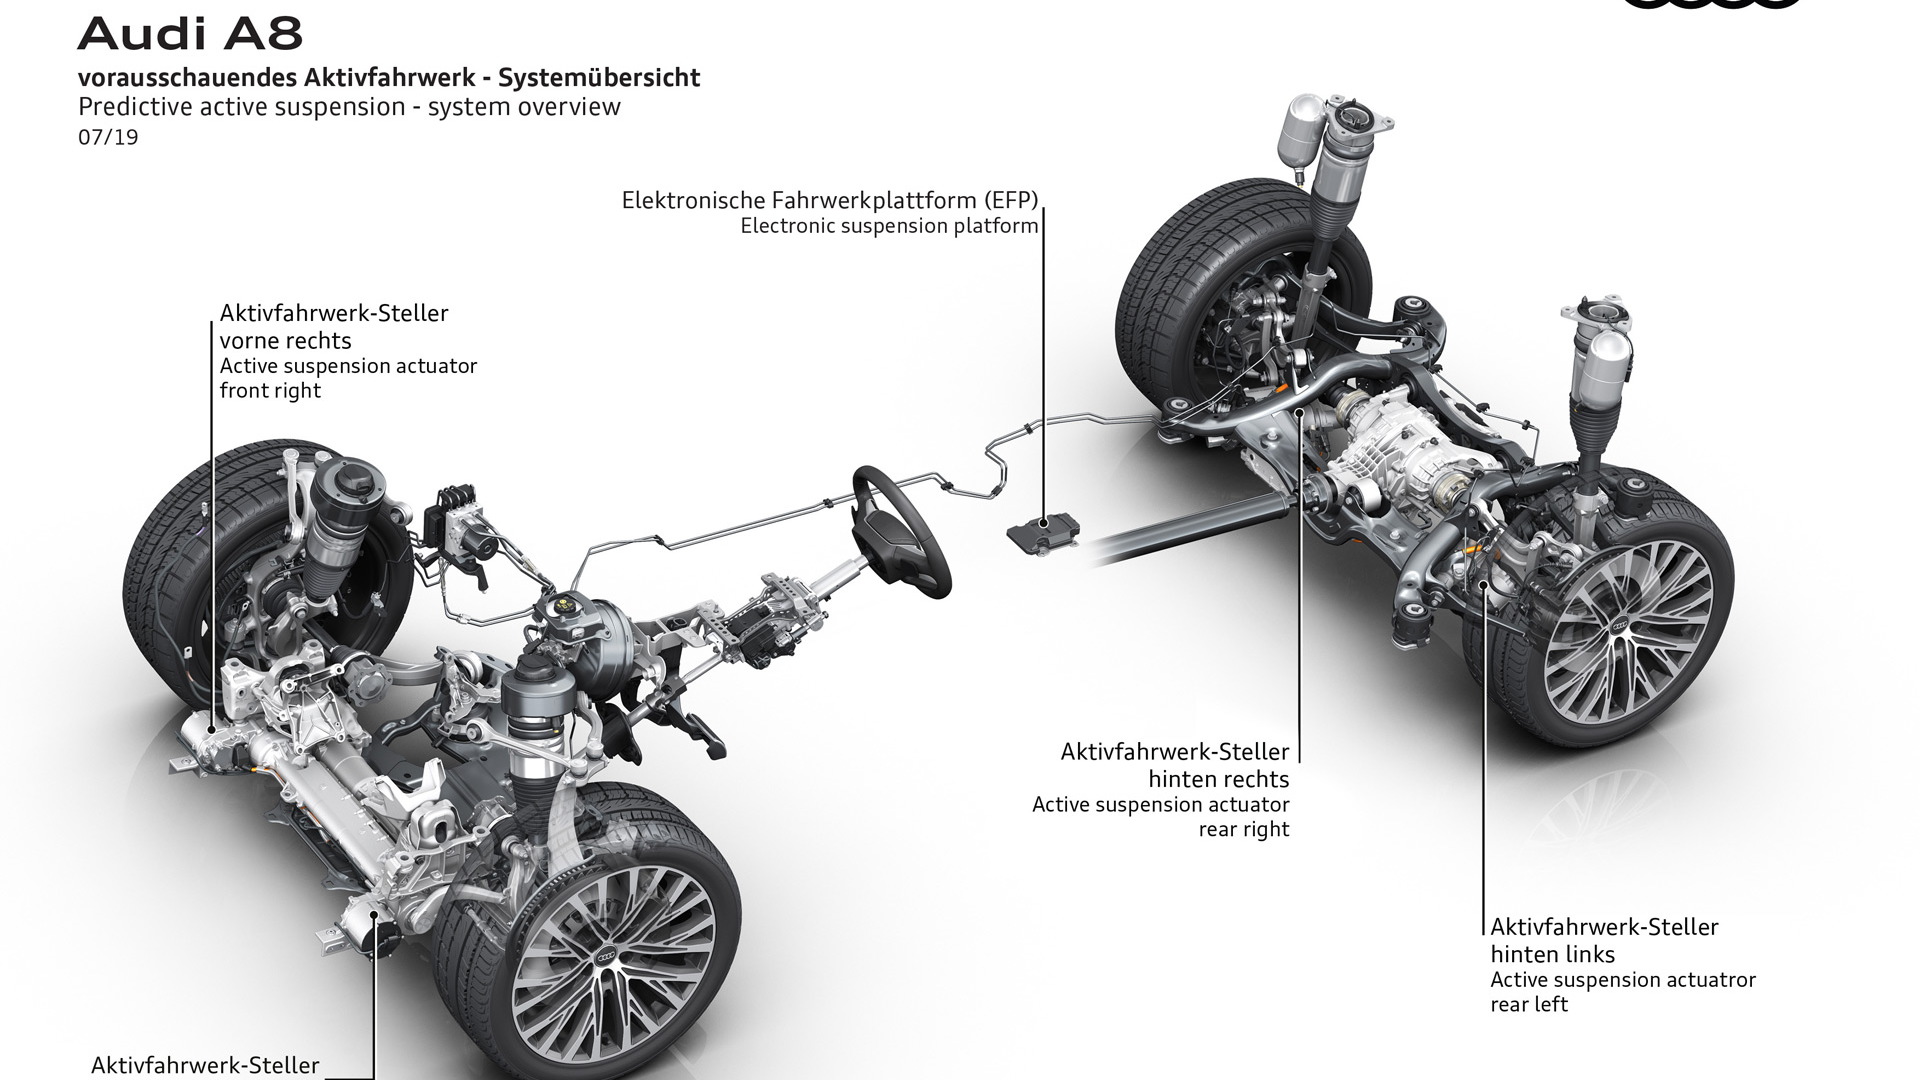 2020 Audi A8's predictive active suspension